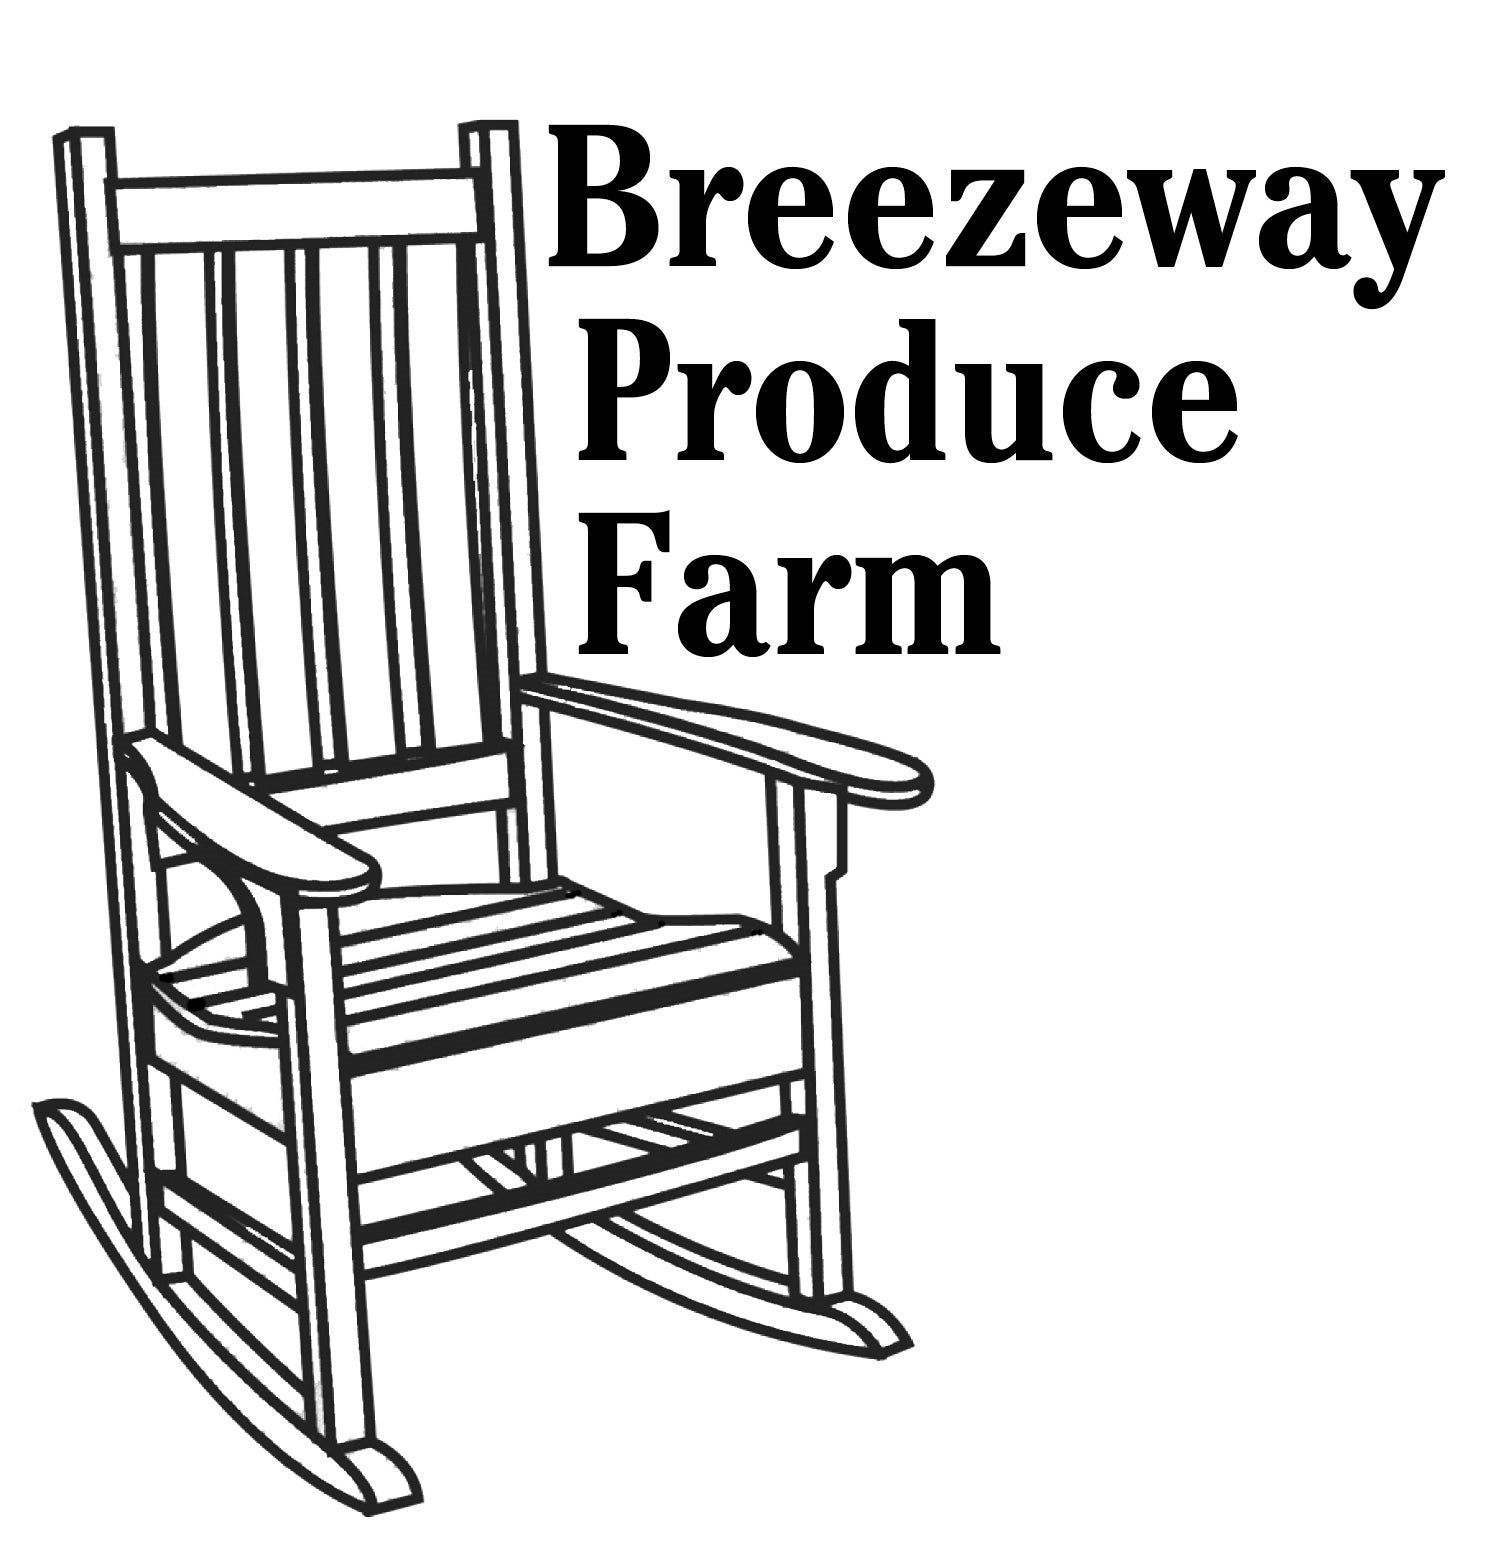 Breezeway Produce Farm logo 